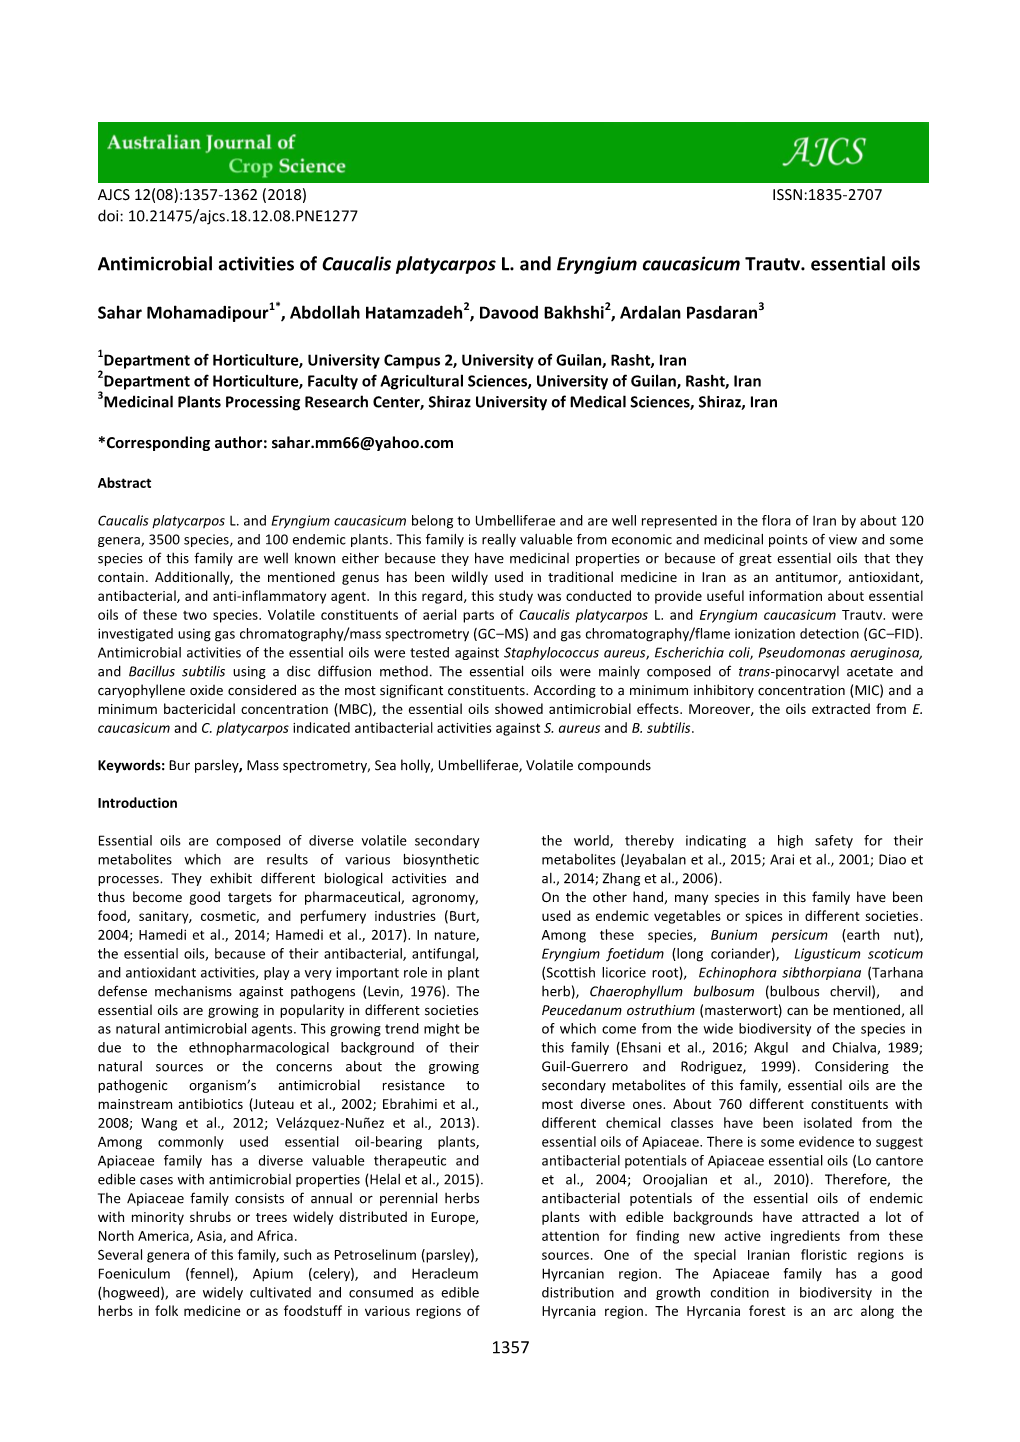 Antimicrobial Activities of Caucalis Platycarpos L. and Eryngium Caucasicum Trautv